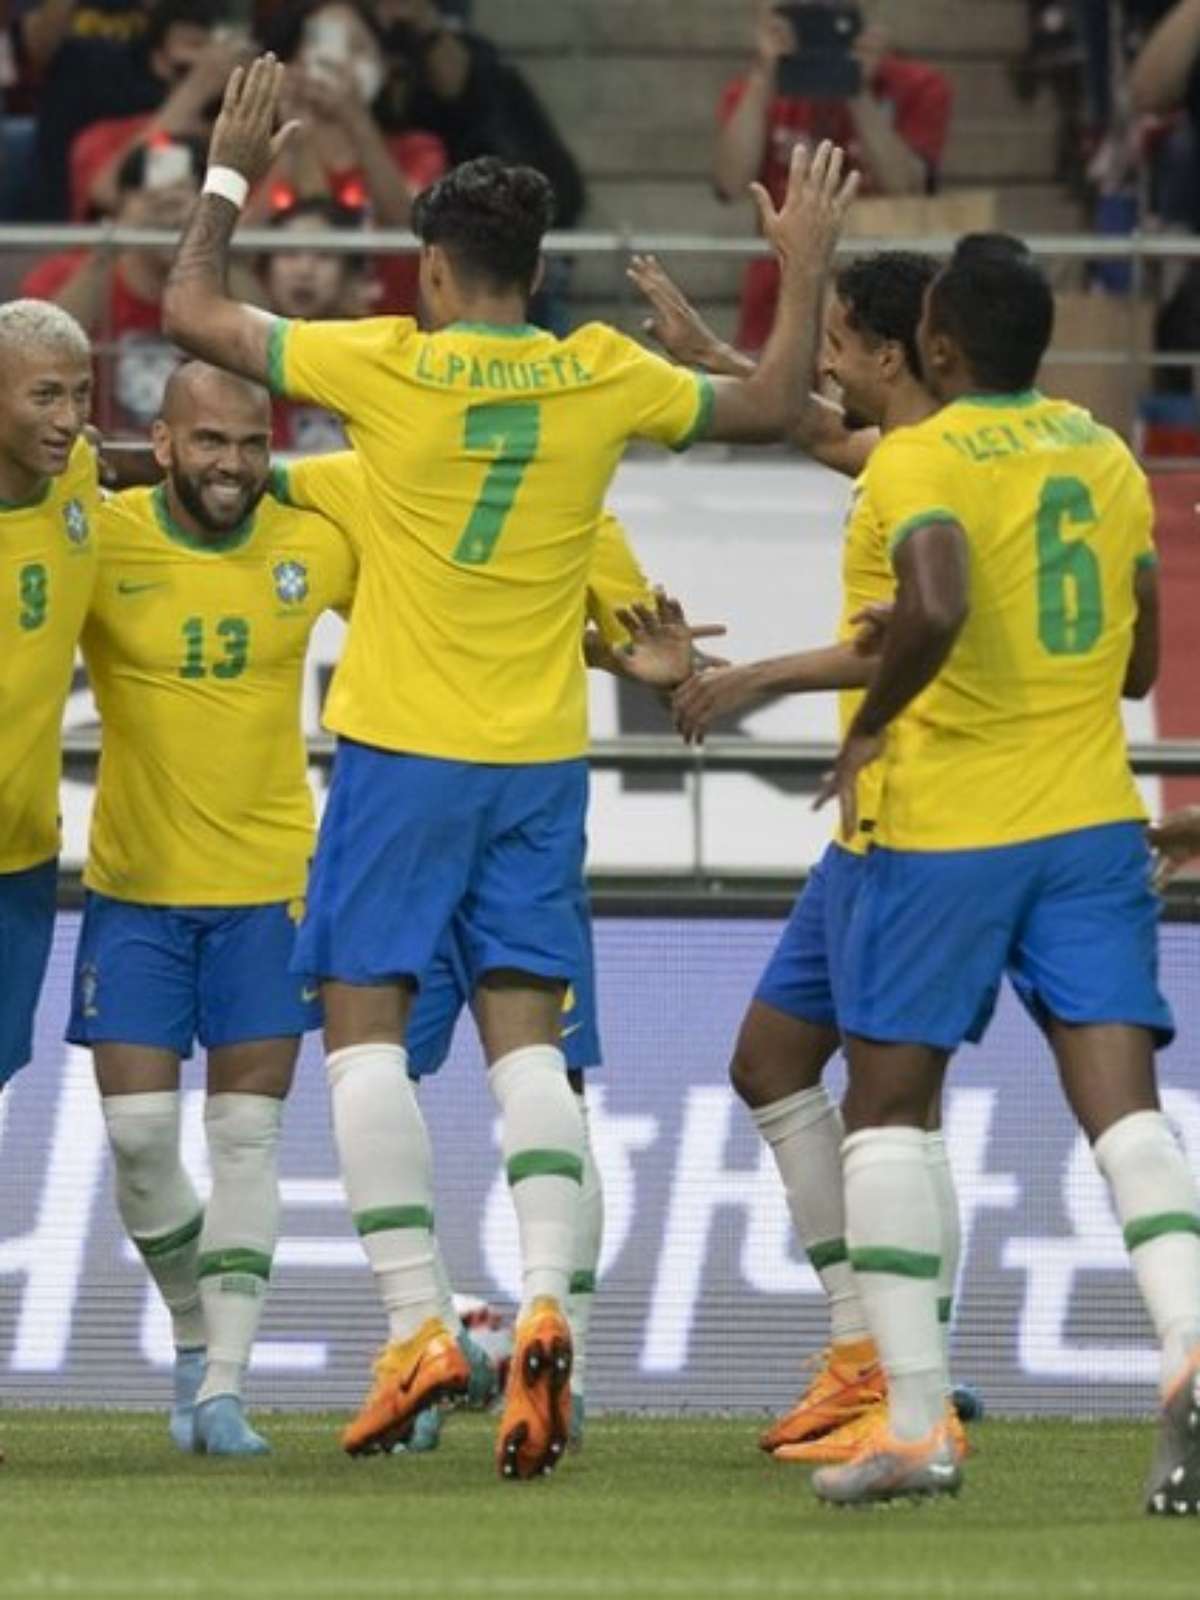 Que horas começa o jogo do Brasil na Copa do Mundo hoje, sexta-feira, 2